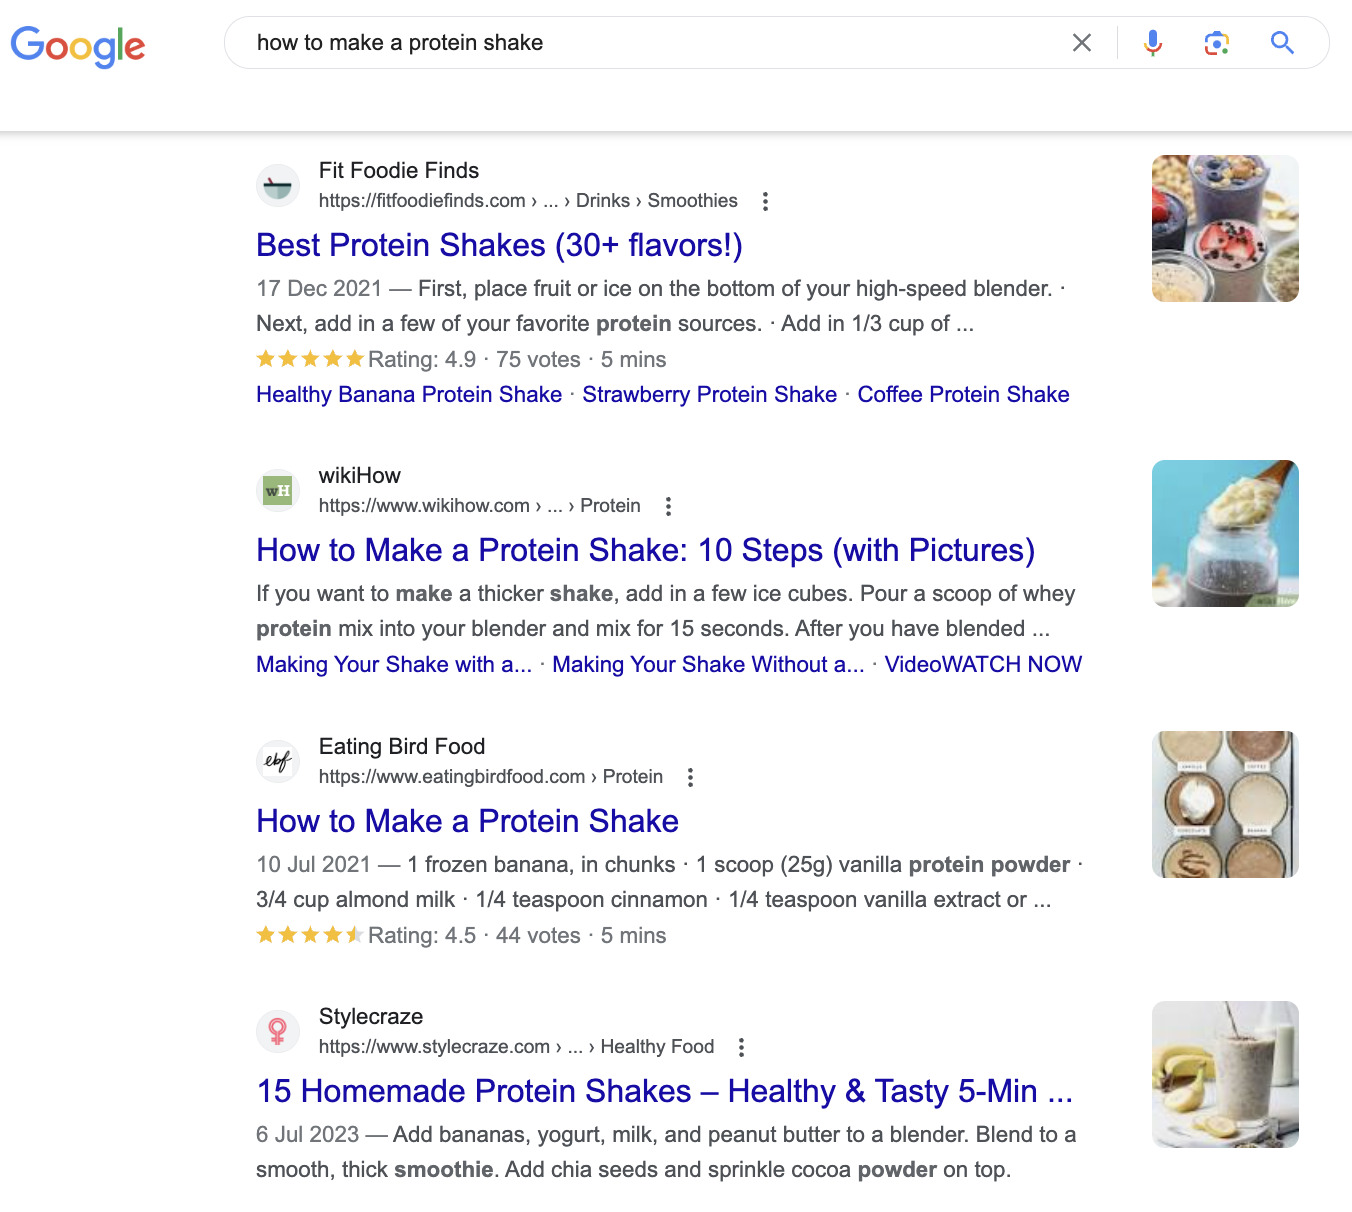 关键词"how to make a protein shake"的 Google SERP 